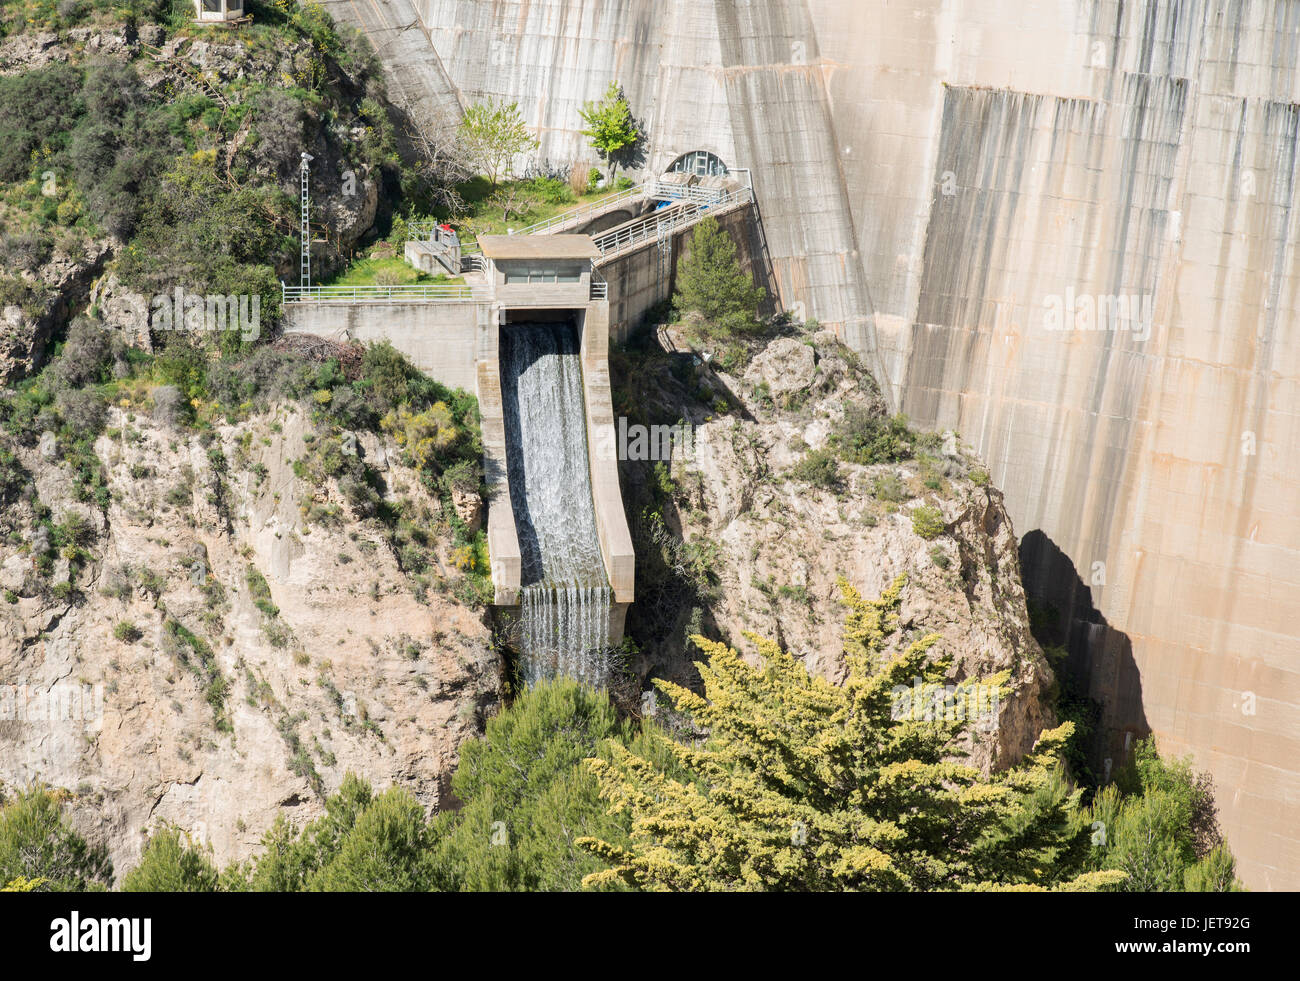 La production d'électricité par l'eau qui tombe dans l'andalousie espagne appelé embalse de beznar Banque D'Images